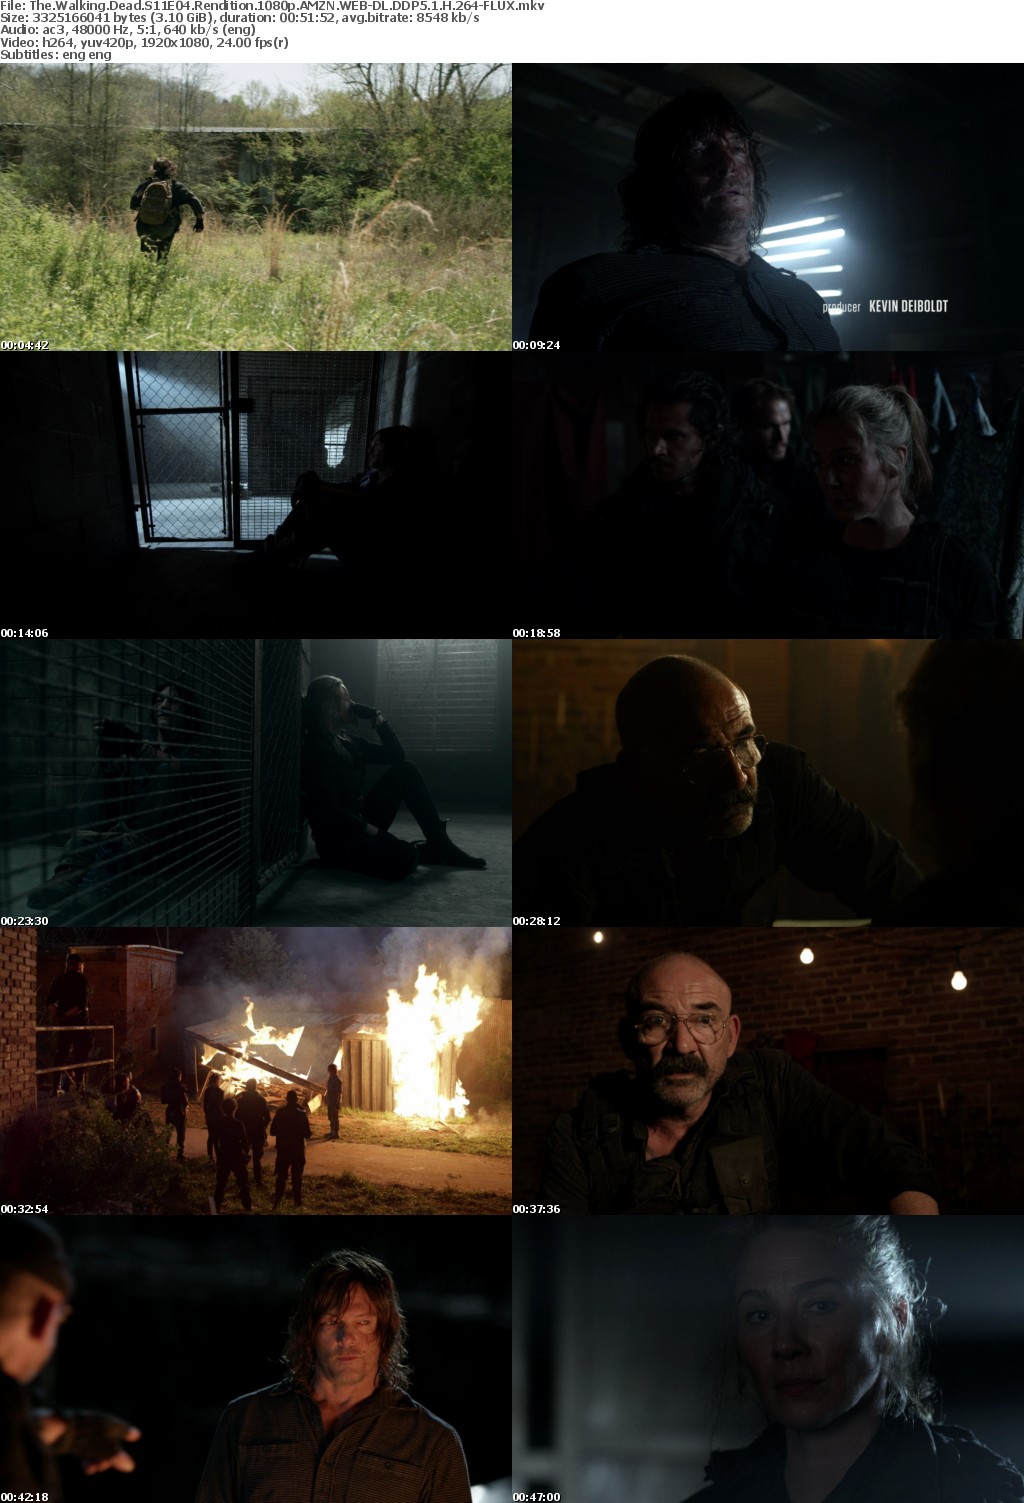 The Walking Dead S11E04 Rendition 1080p AMZN WEBRip DDP5 1 x264-FLUX